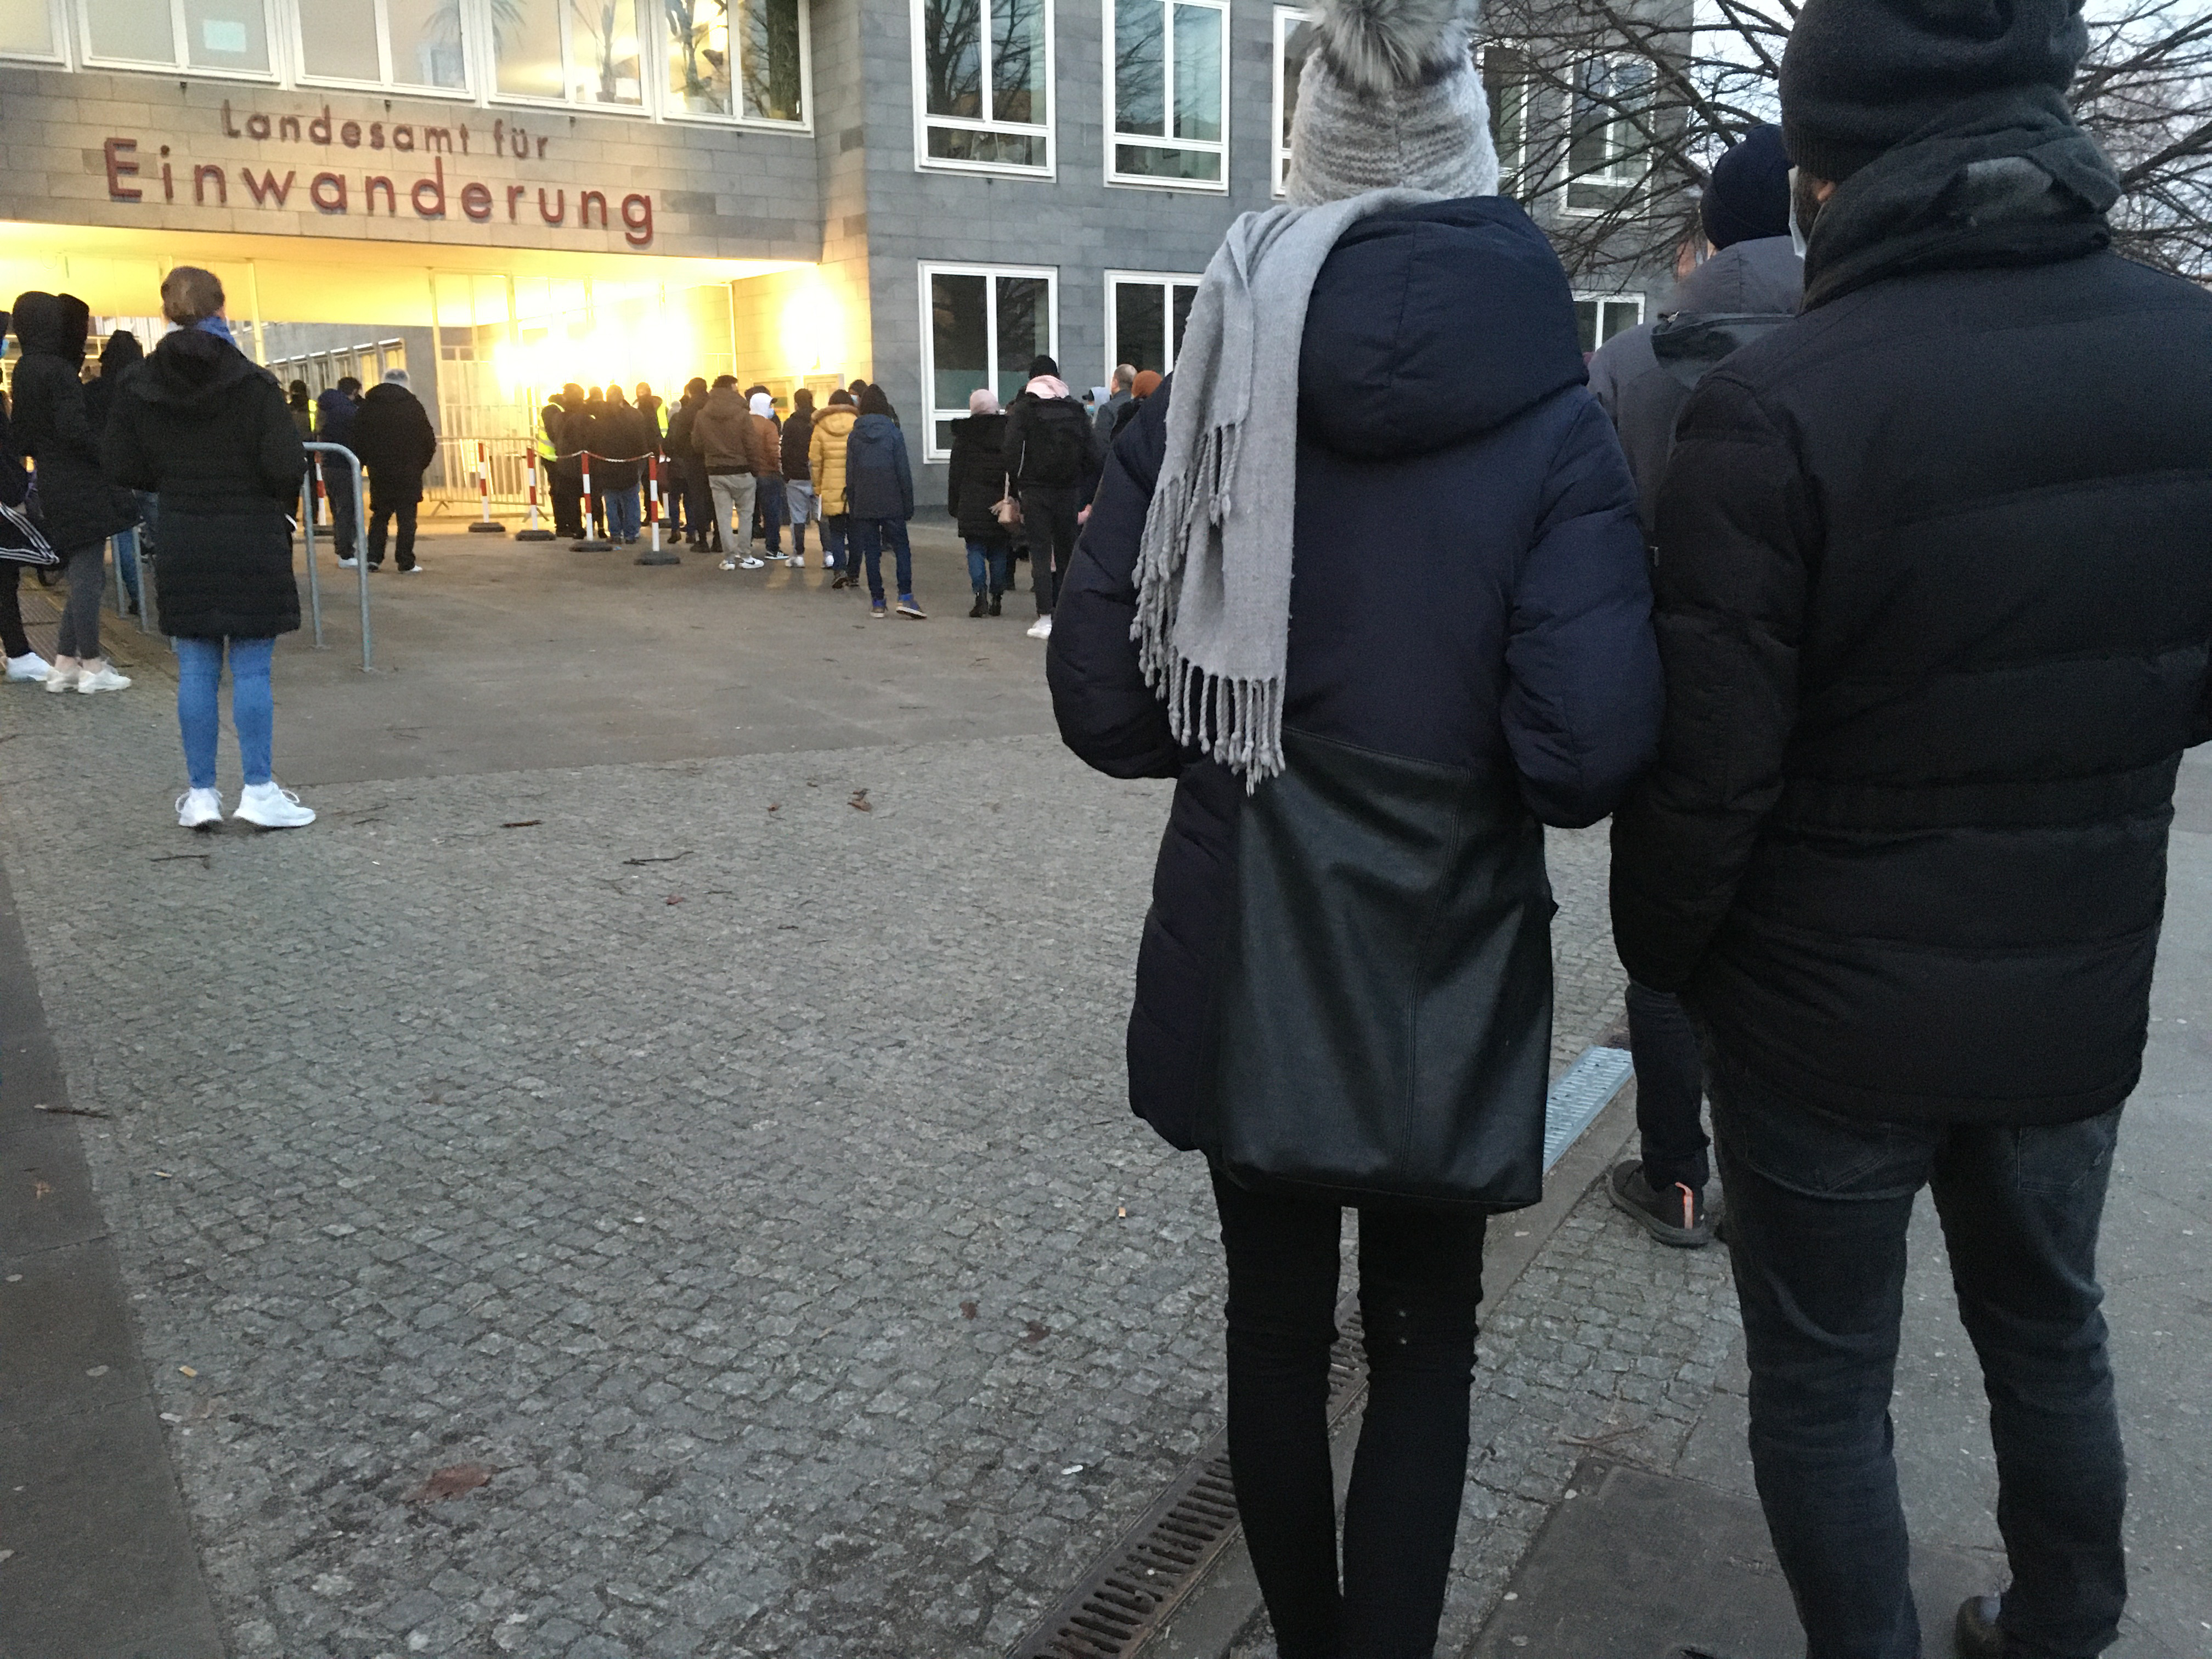 Waiting in line at the Landesamt für Einwanderung for our visas.